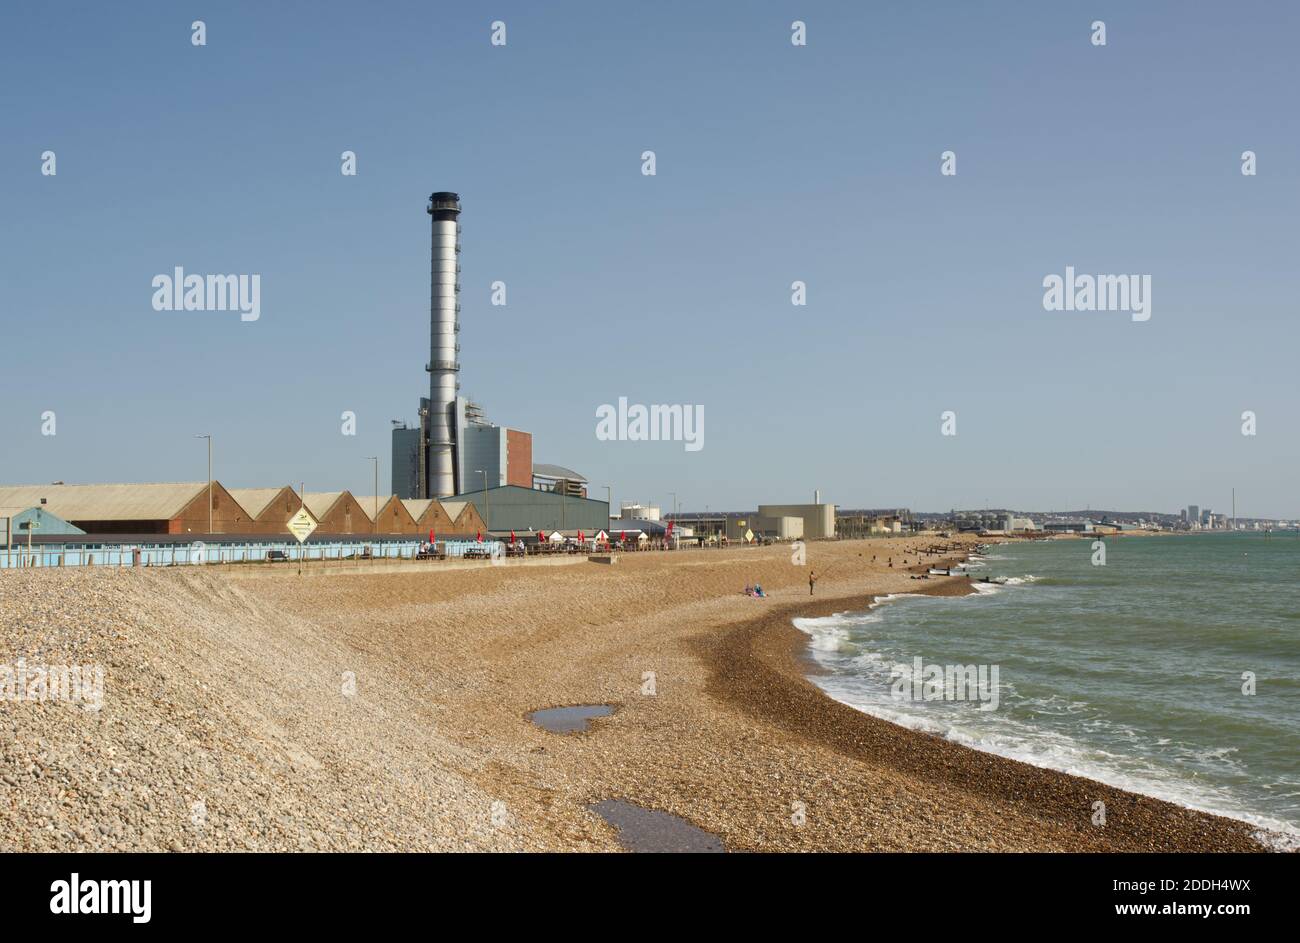 Bord de mer à Shoreham, West Sussex, Angleterre. Avec des cabanes de plage, des bâtiments de port de café et une cheminée de centrale électrique. Banque D'Images